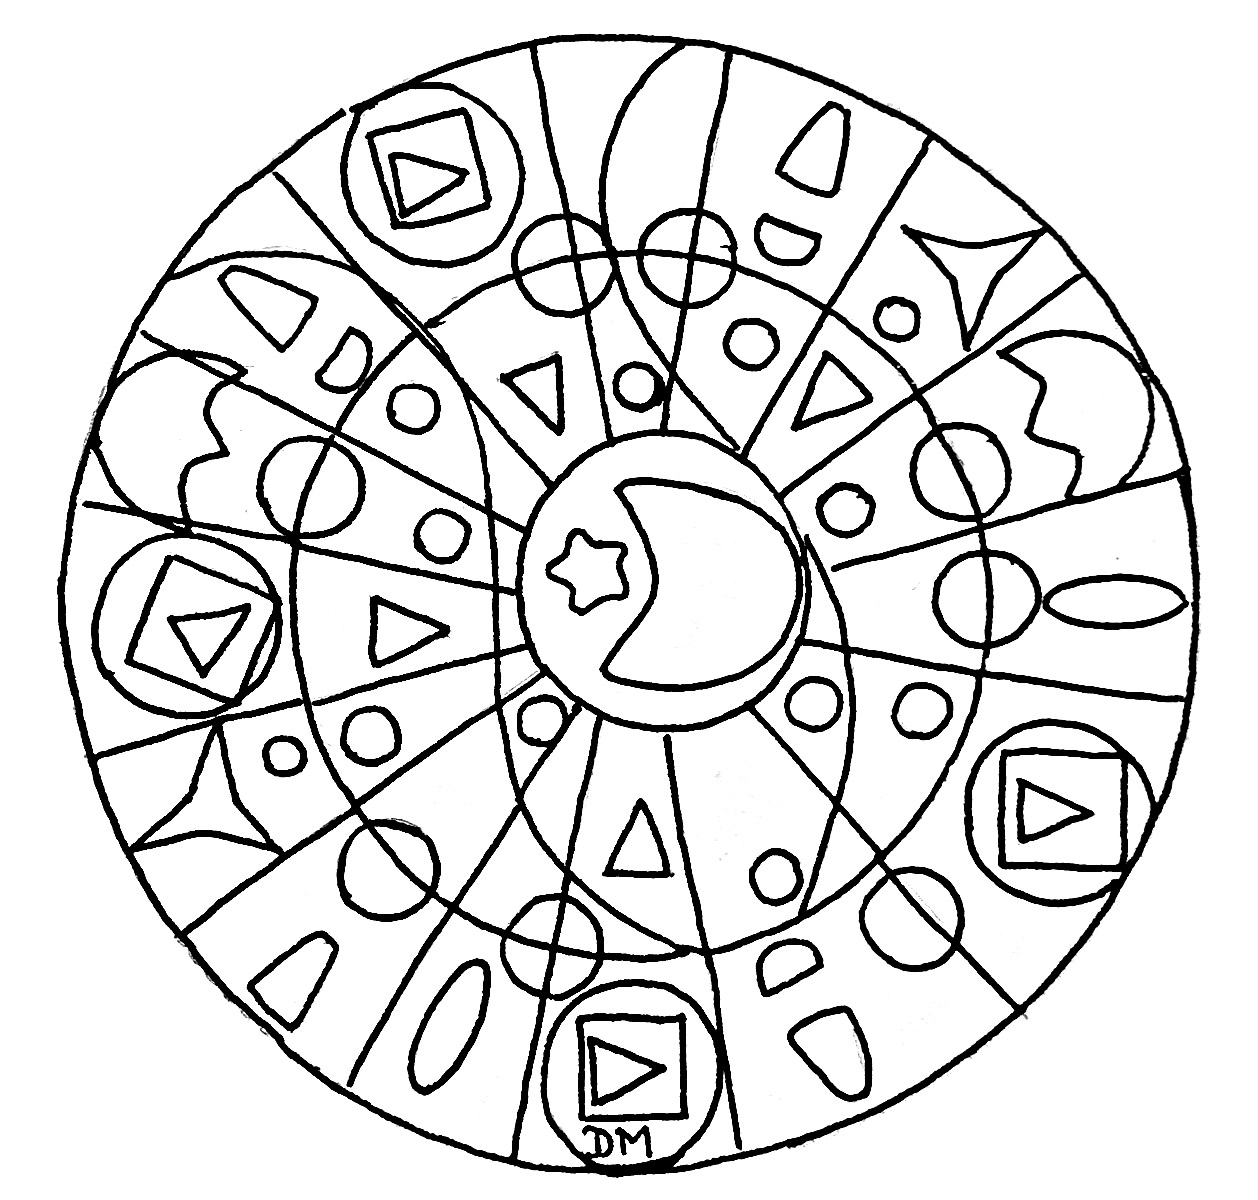 Wenn Sie ein Mandala mit einfachen Formen suchen, das nicht zu kompliziert zum Ausmalen ist, aber trotzdem einen relativen Schwierigkeitsgrad hat, ist dieses hier perfekt für Sie.